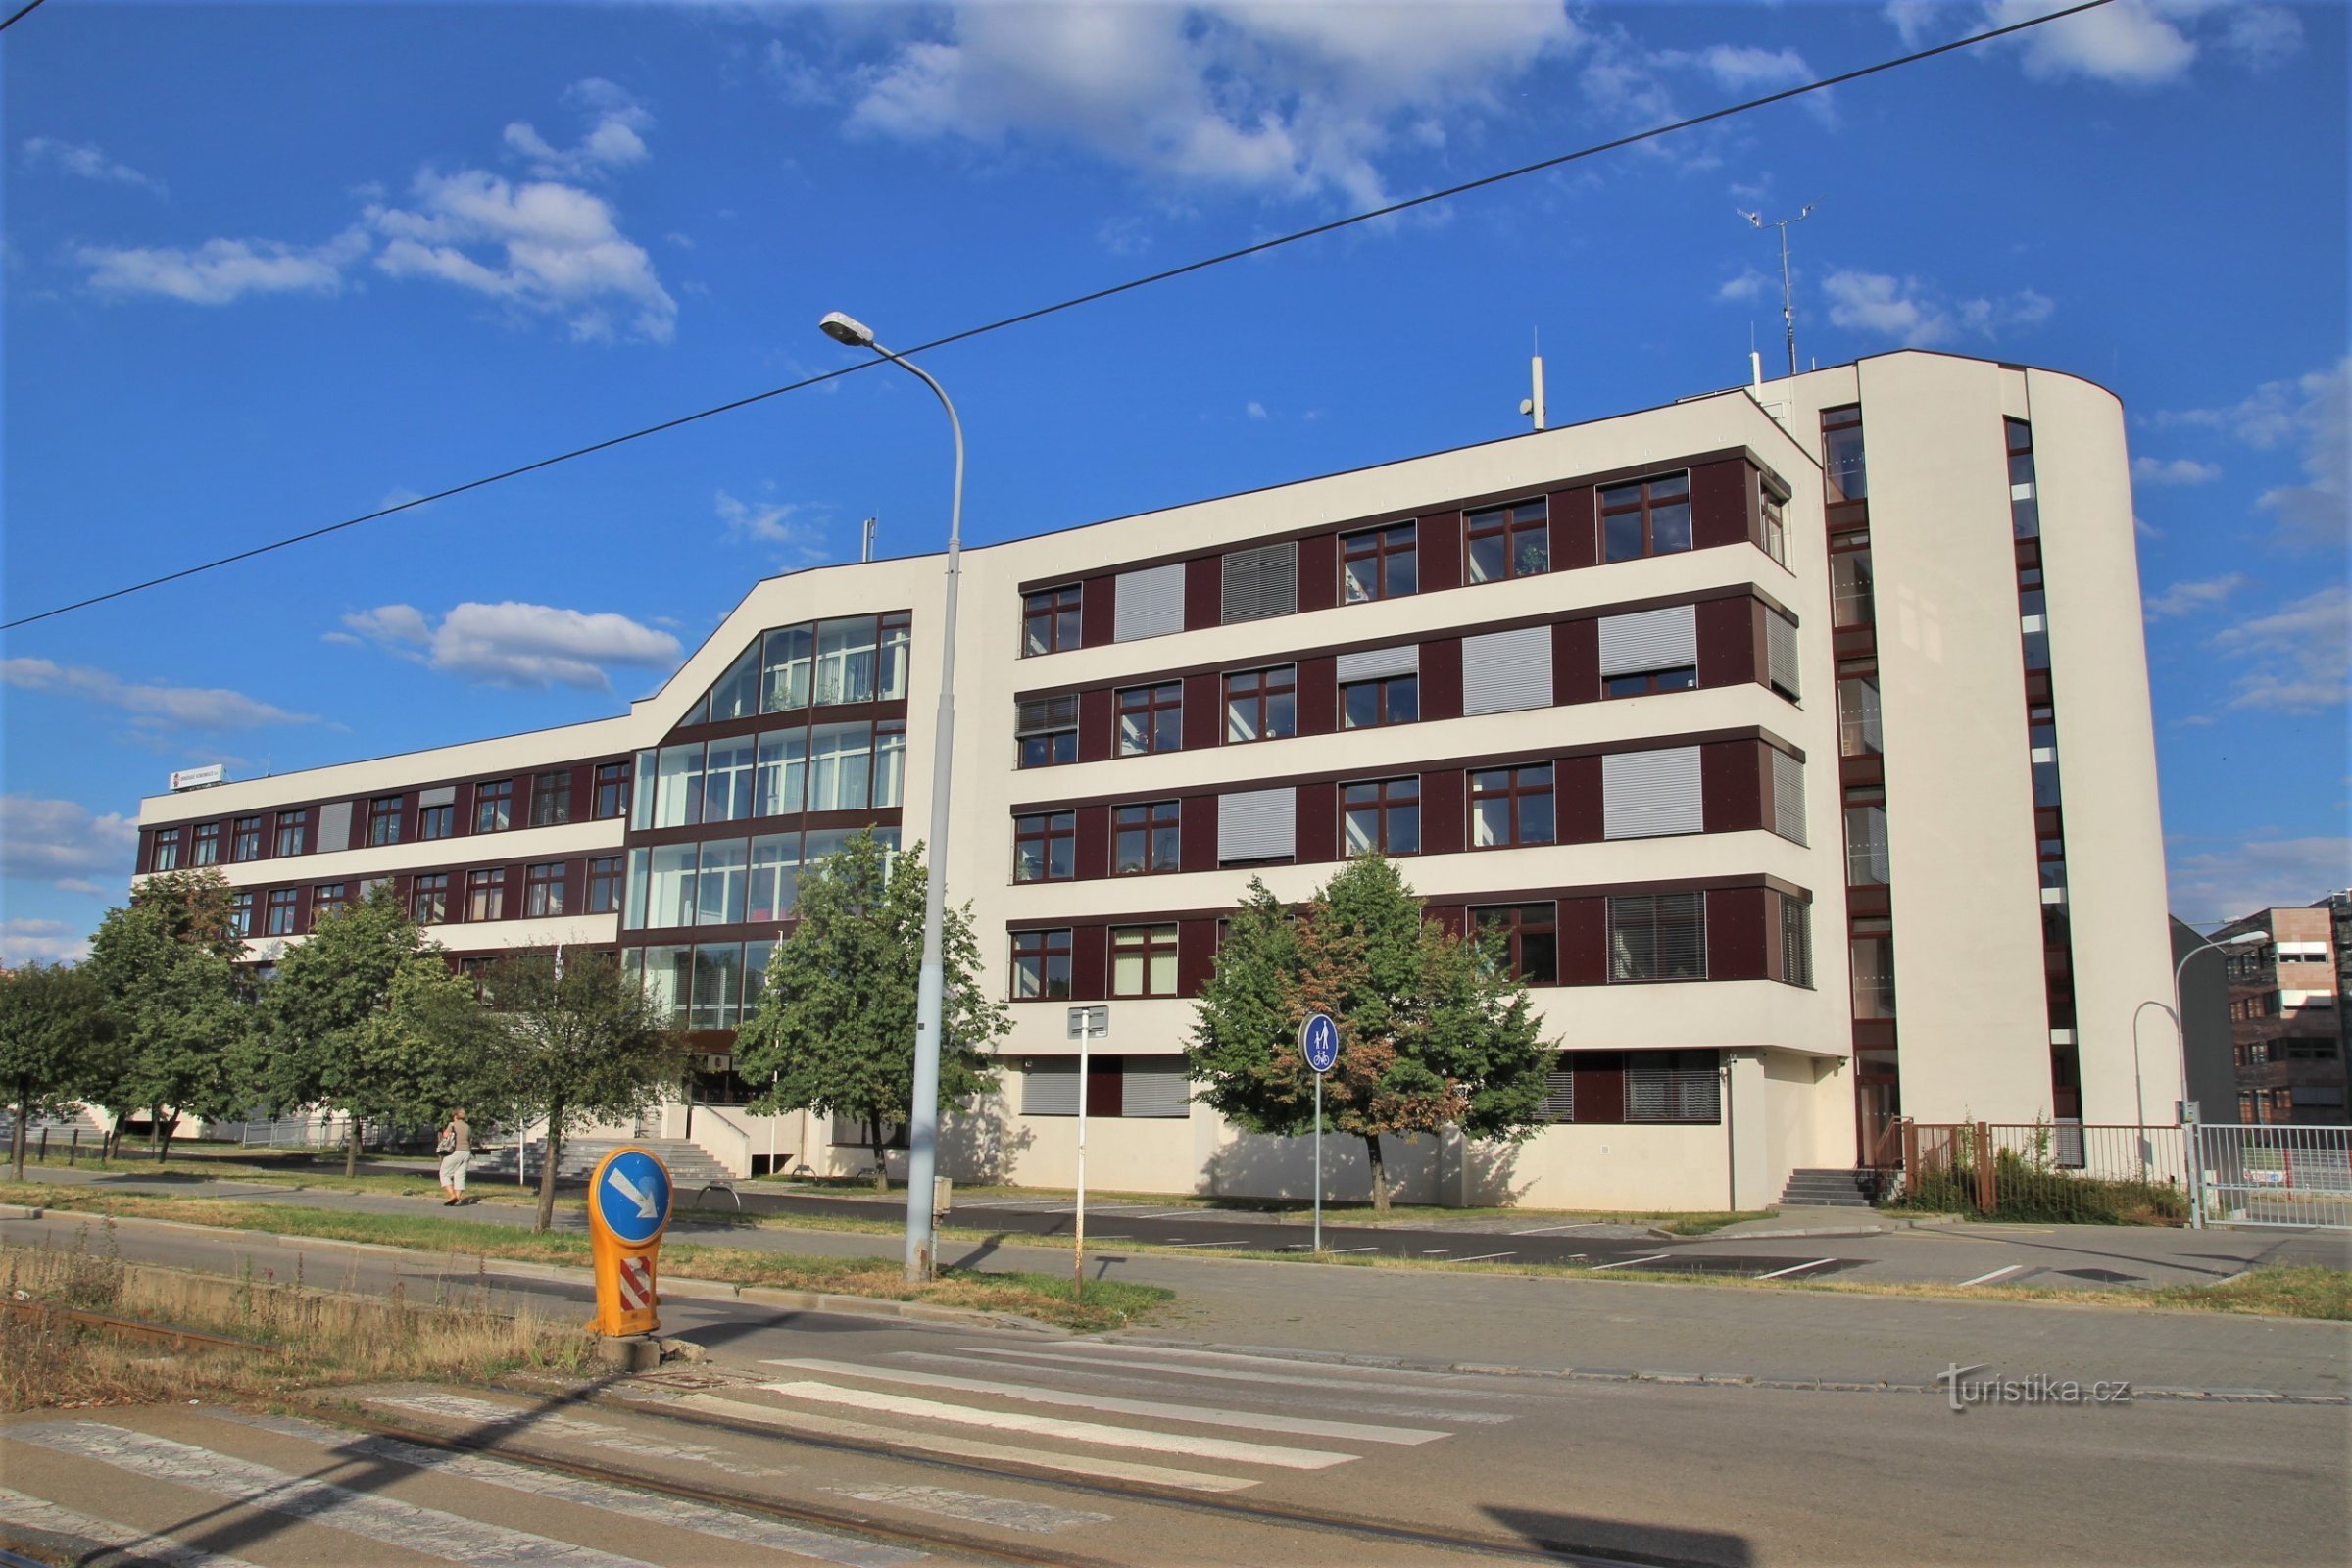 Bâtiment des communications de Brno